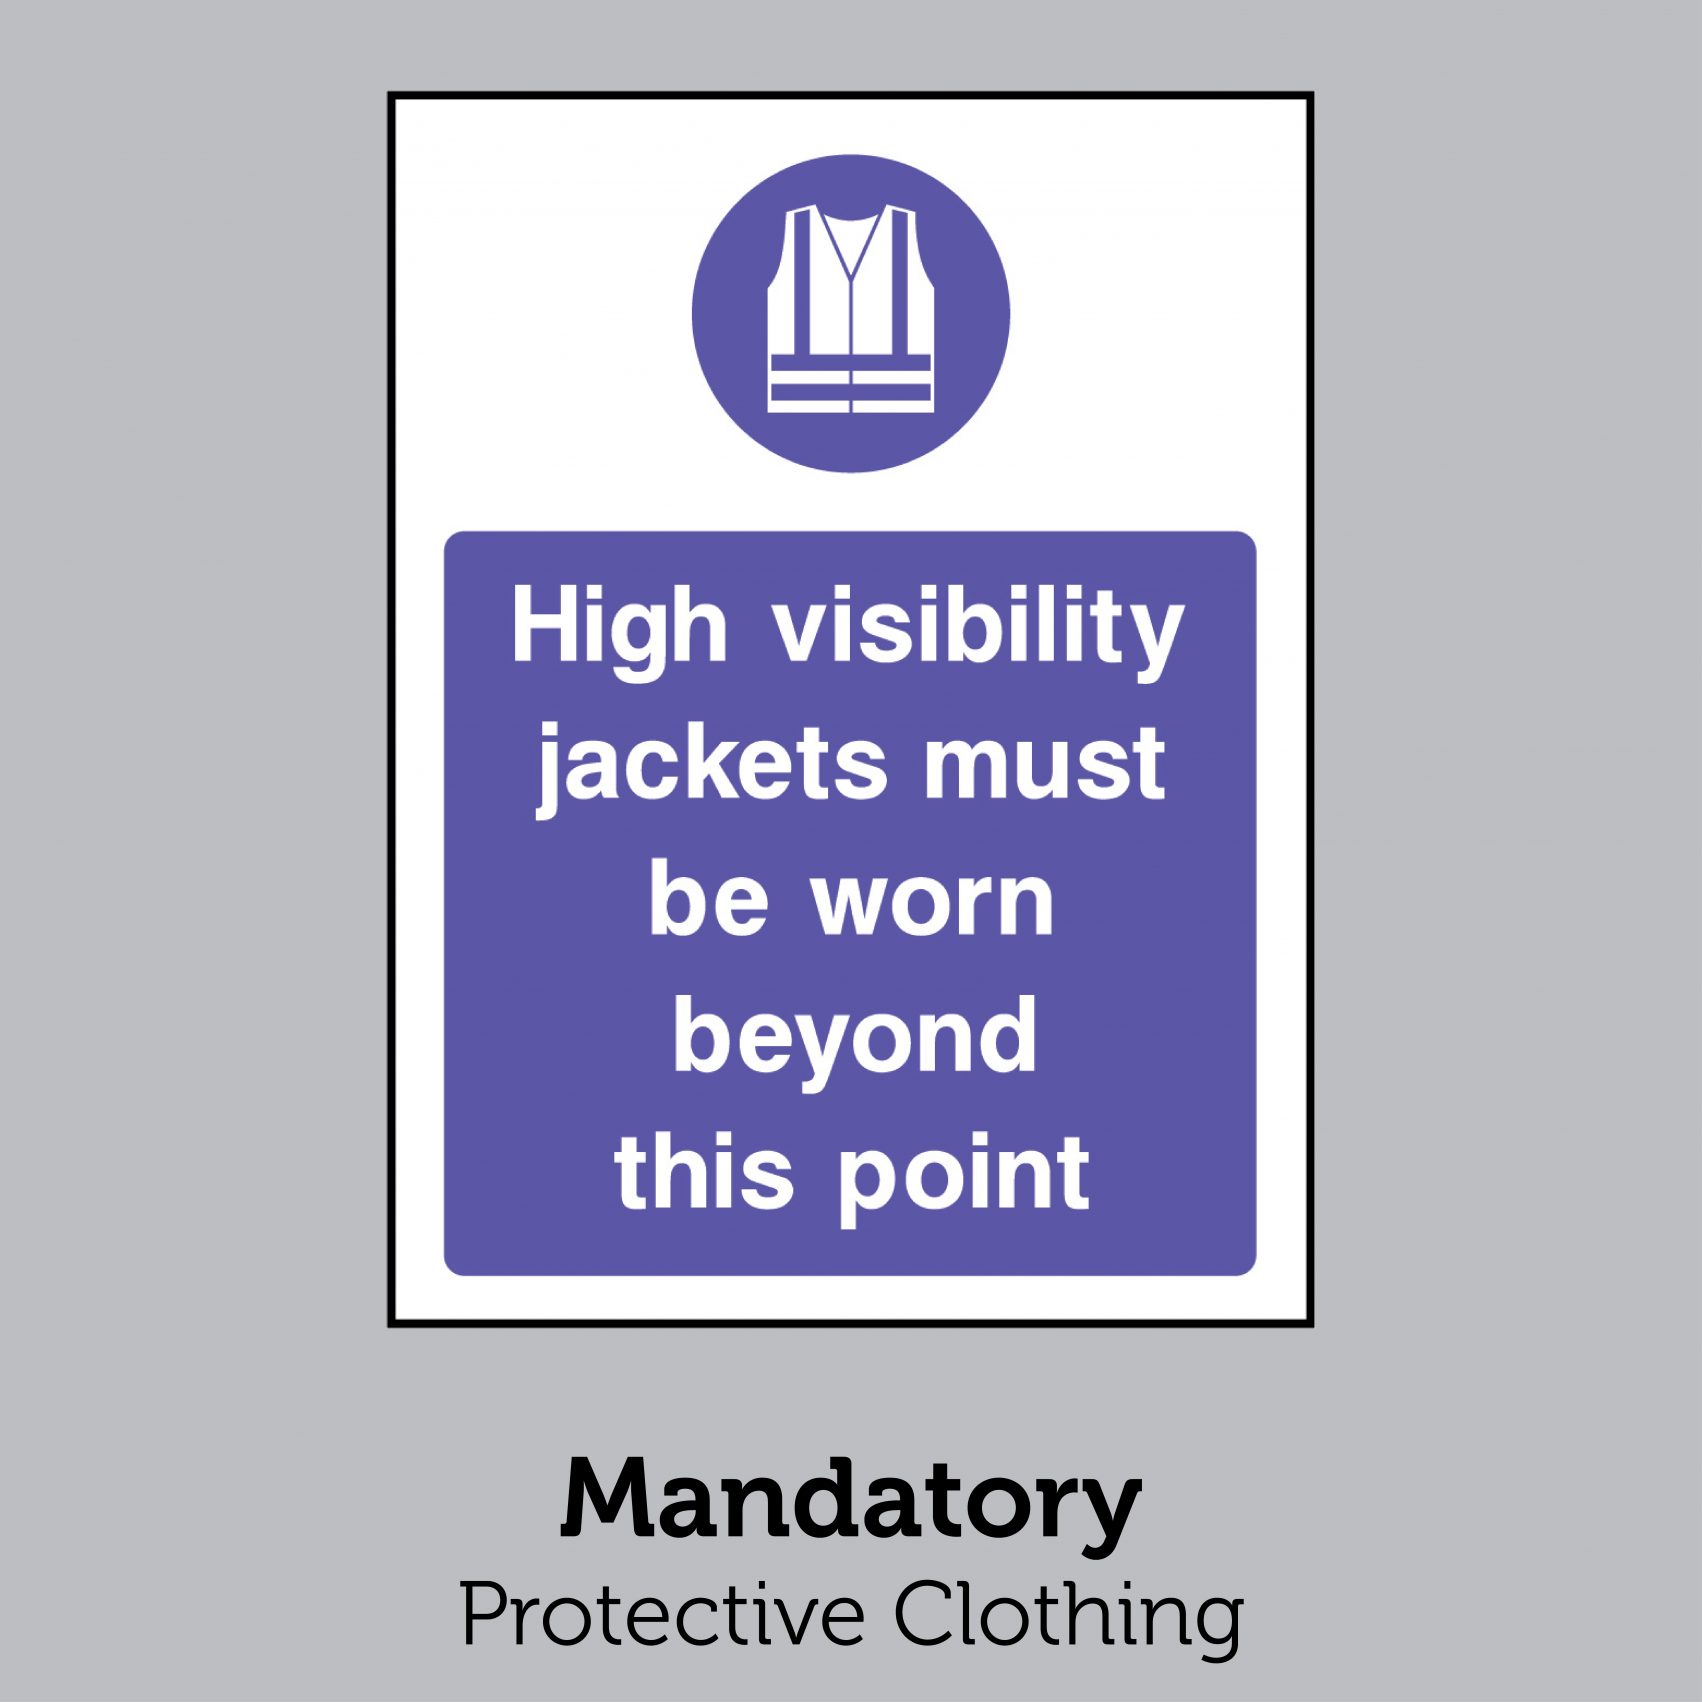 Mandatory - Protective Clothing